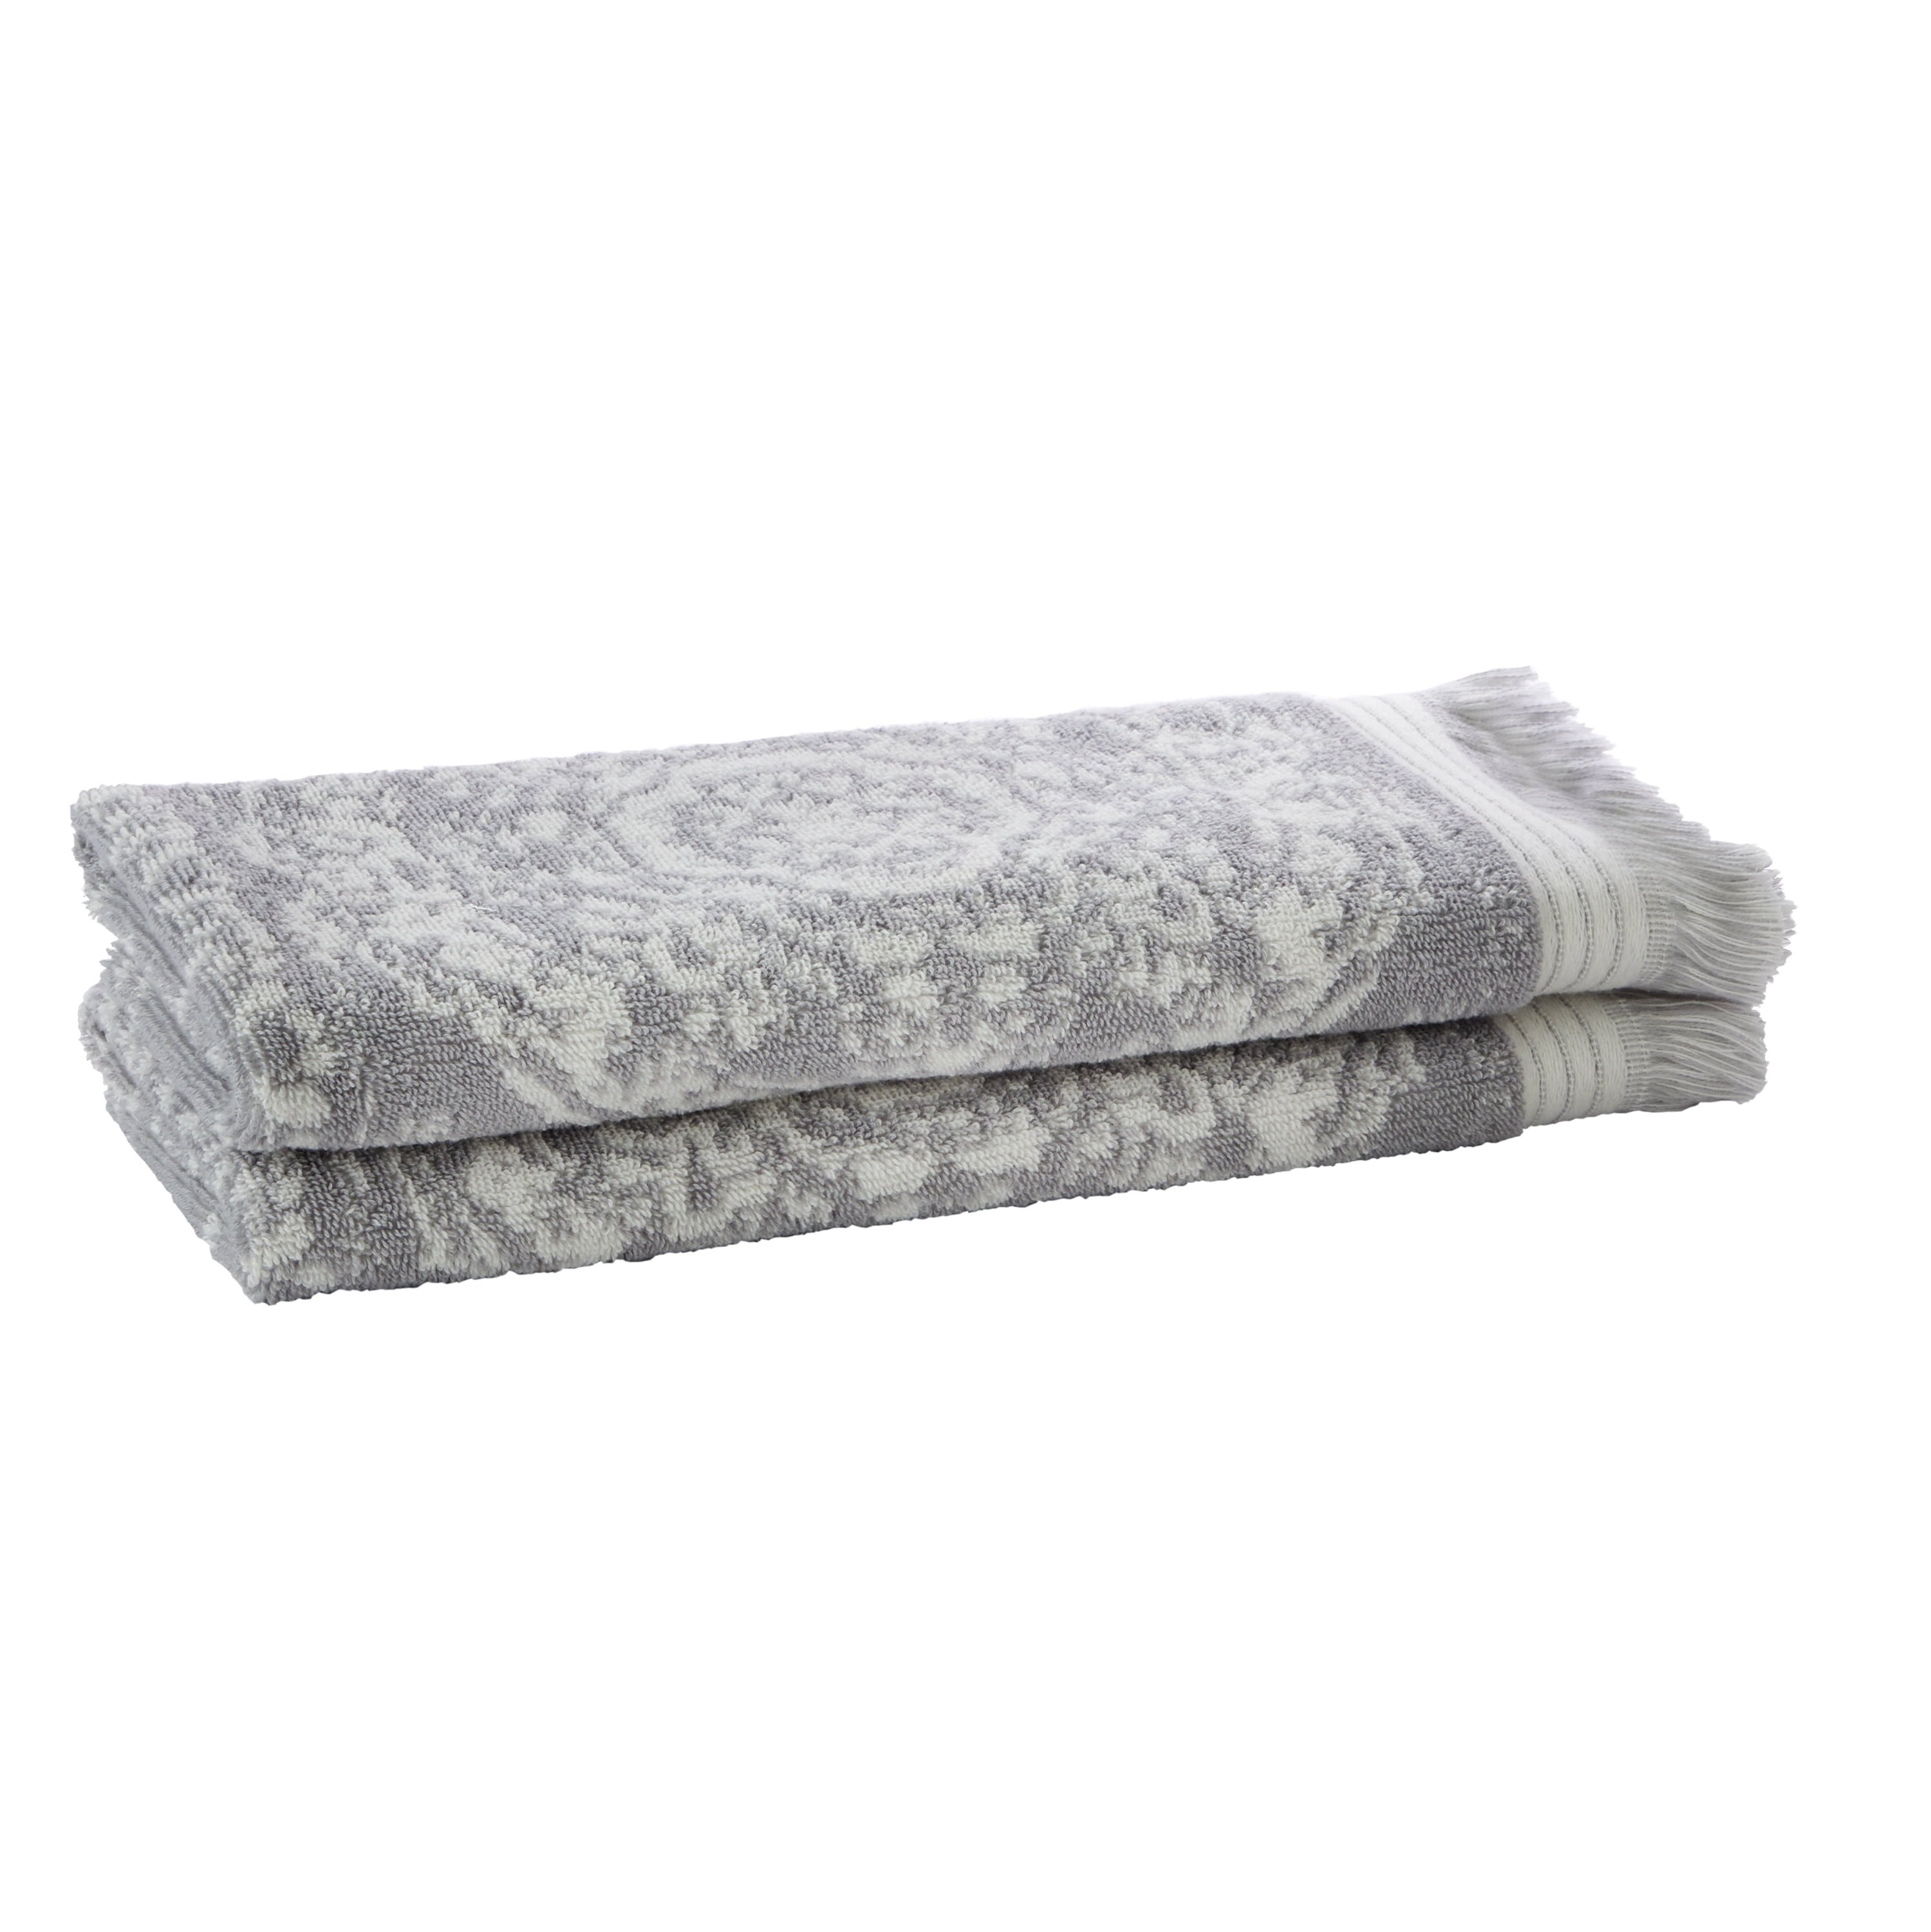 SKL Home Lincoln Park 2-Piece Hand Towel Set, Grey